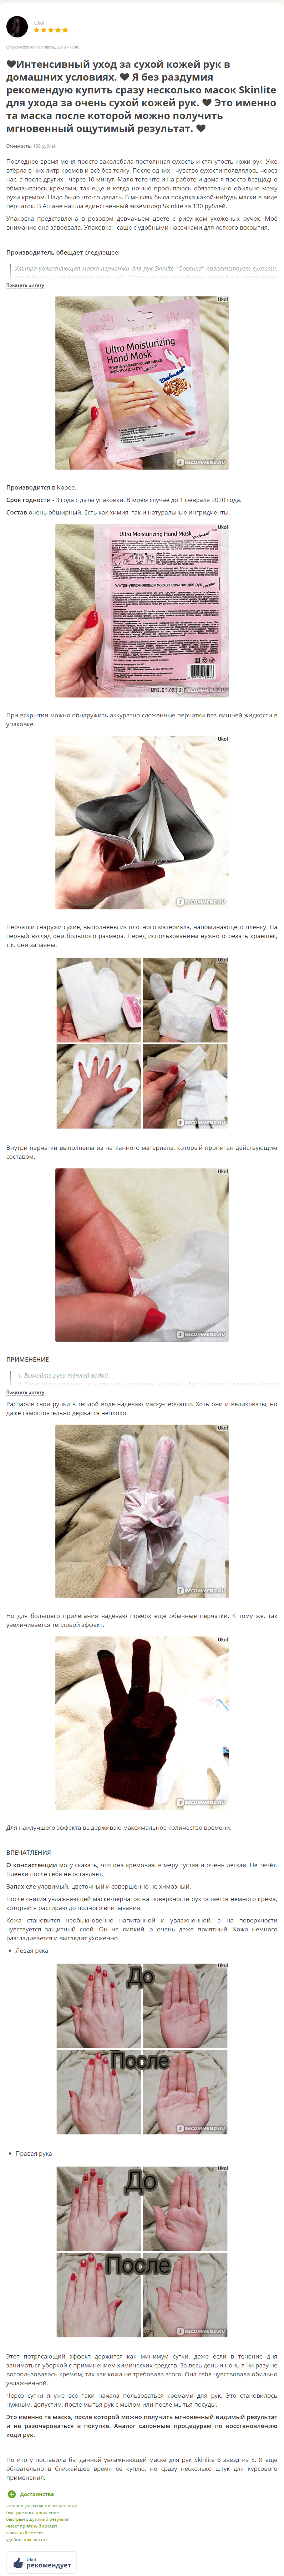 ultra_moisturizing_hand_mask_skinlite_otzyv_1_1